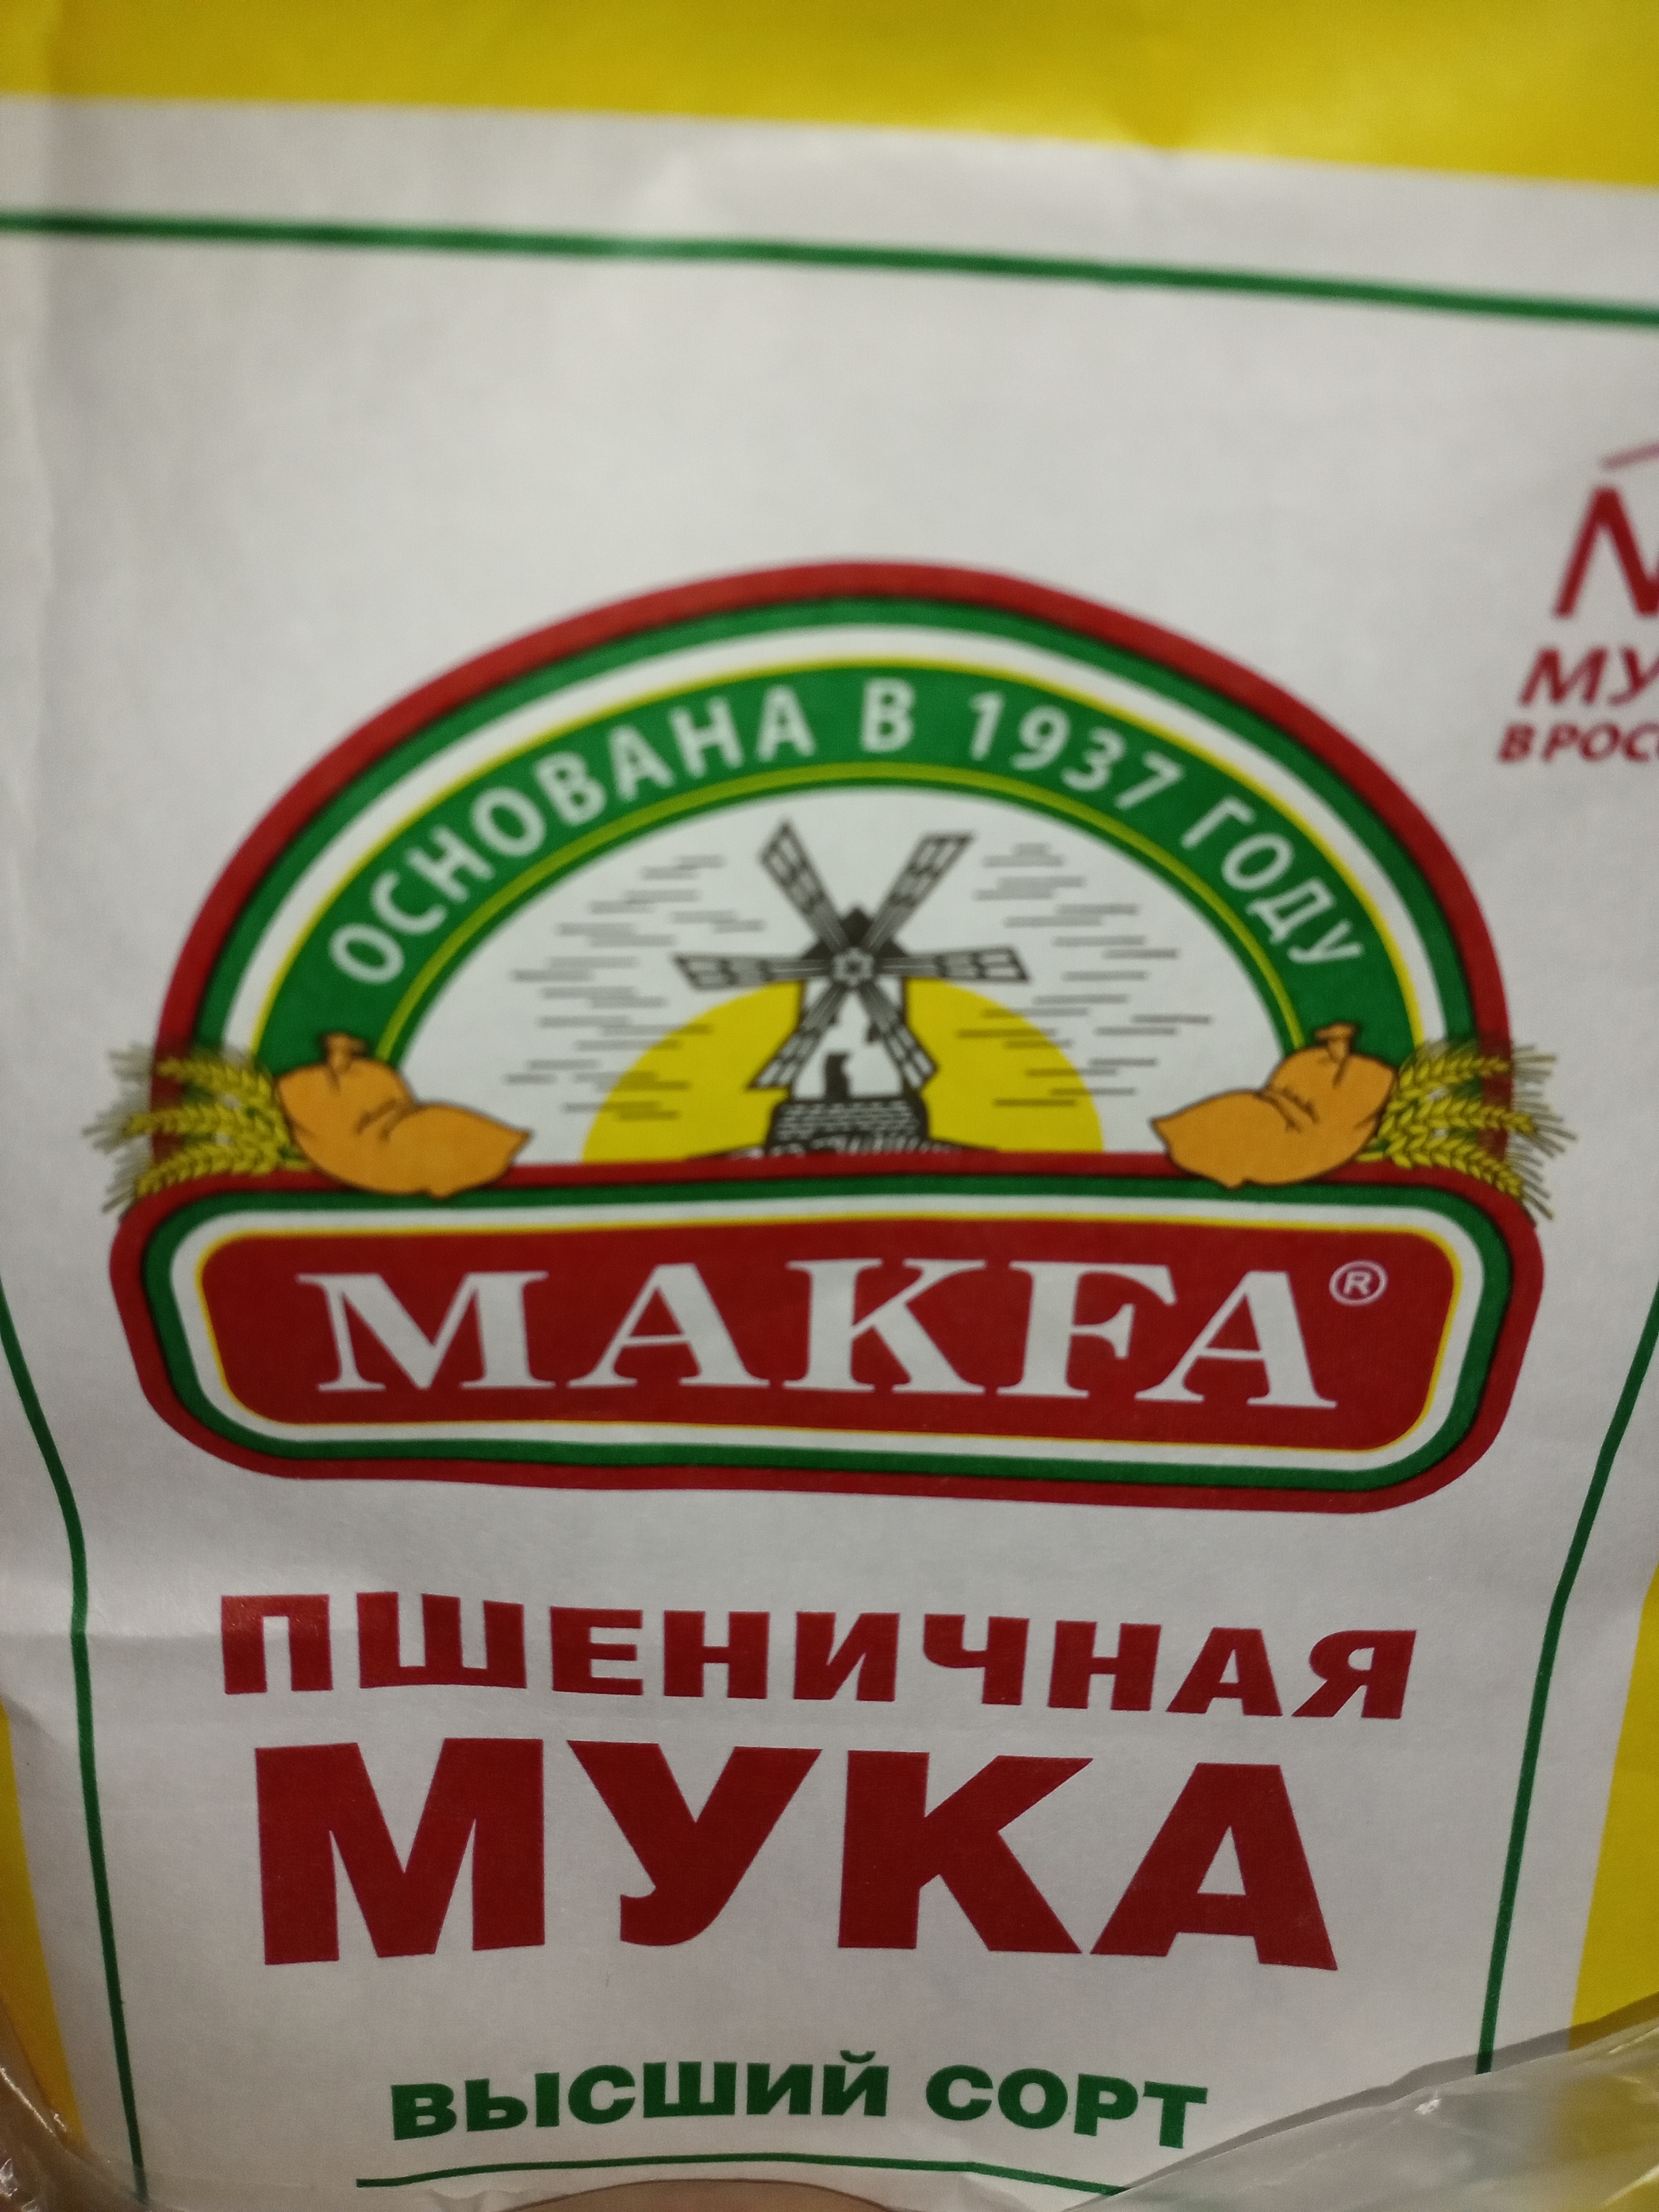 Мука высший сорт или первый сорт. Makfa пшеничная мука высший сорт. Мука makfa пшеничная высший сорт 1кг х 3шт. Макфа пшеничная высший сорт. Мука пшеничная хлебопекарная 1 сорт.